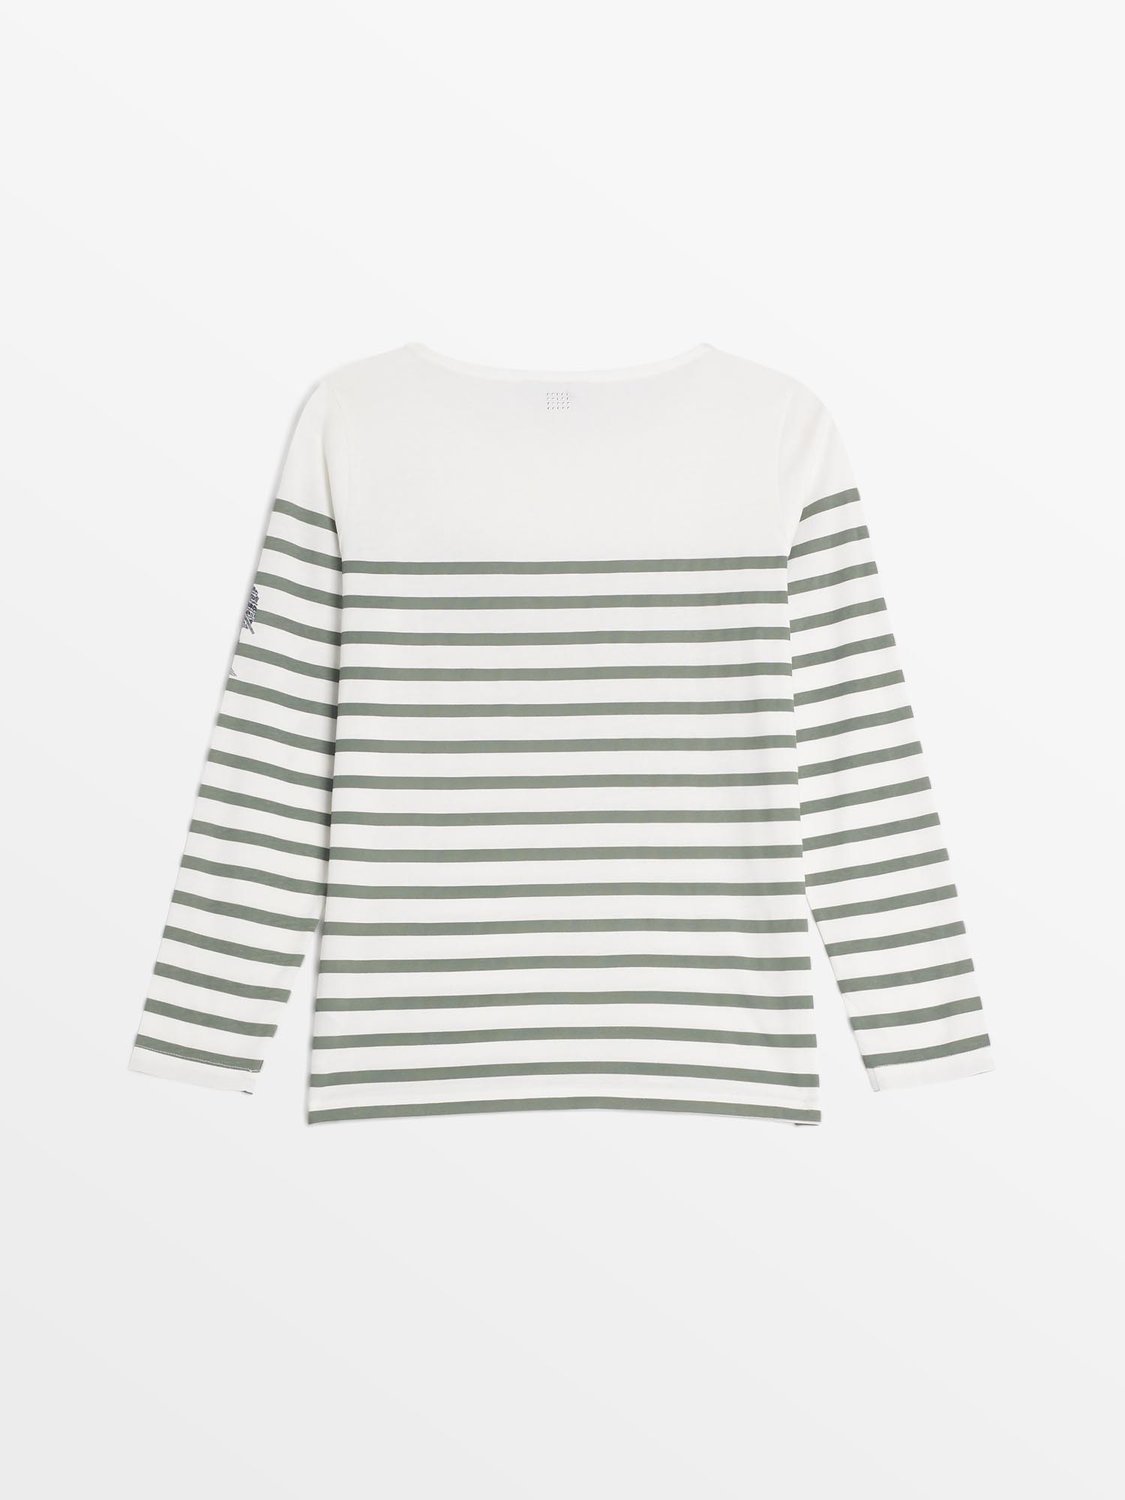 Tee Shirt Marinière Femme Coton Biologique Blanc et Vert